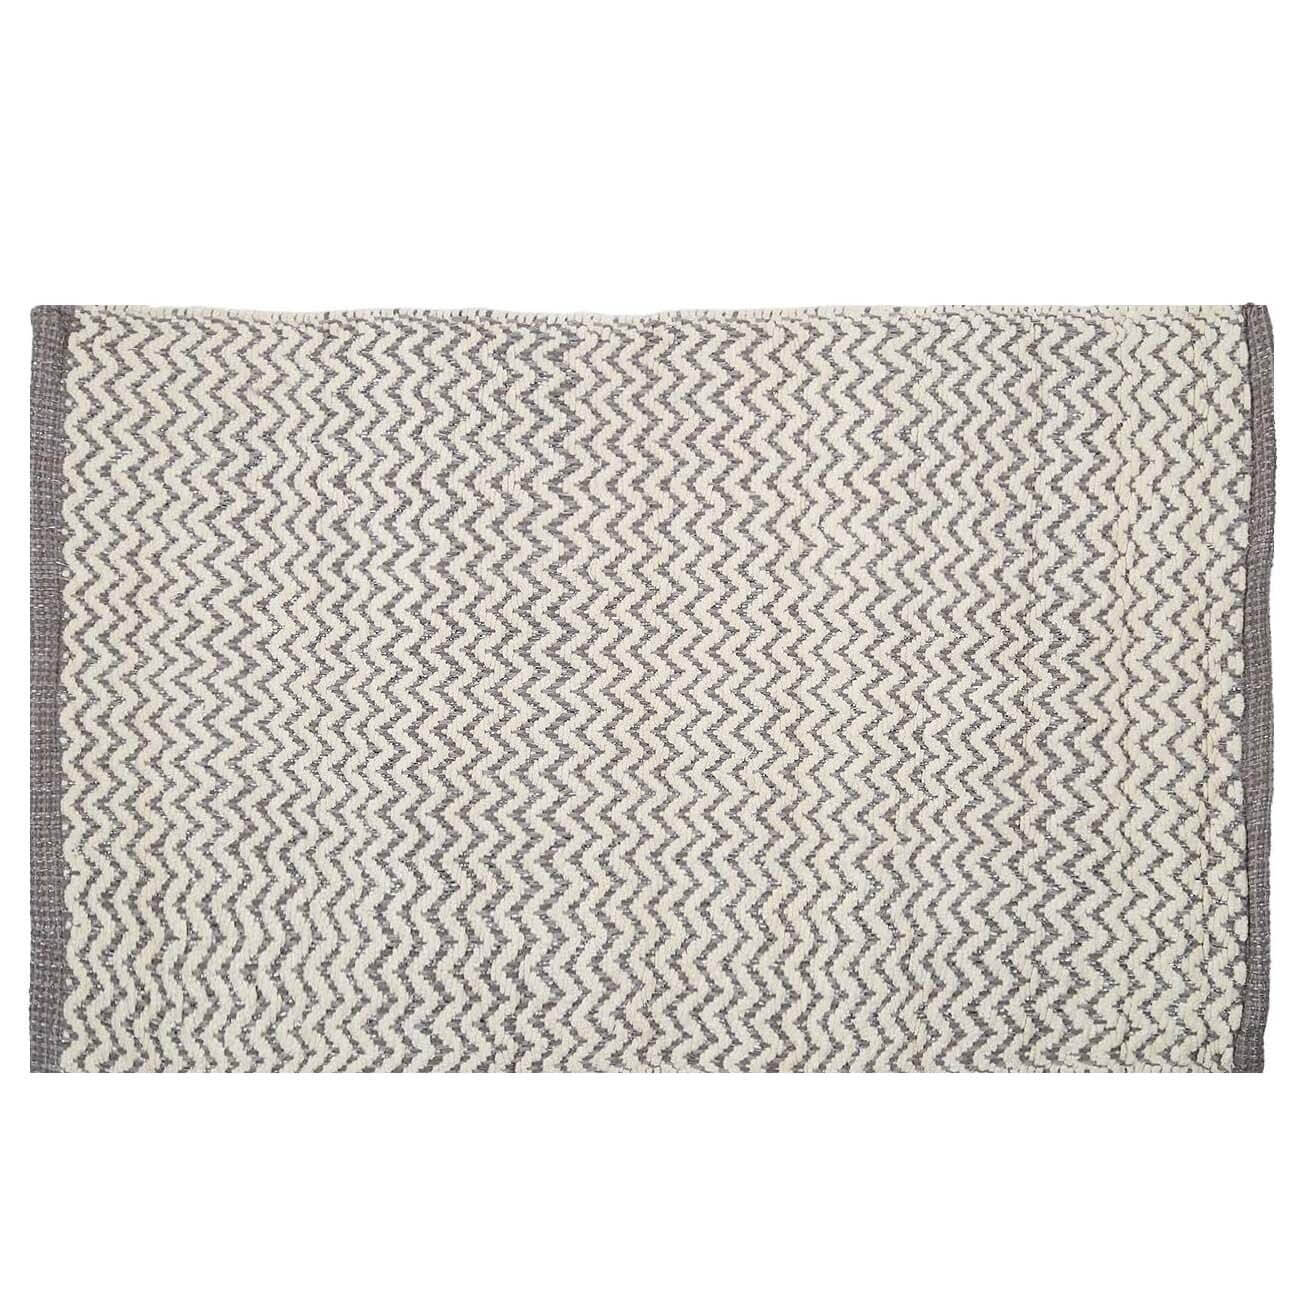 Коврик, 50х80 см, хлопок, бело-серый, Зигзаги с люрексом, Shiny threads коврик для животных eva ячеиистый 27 х 34 см серый